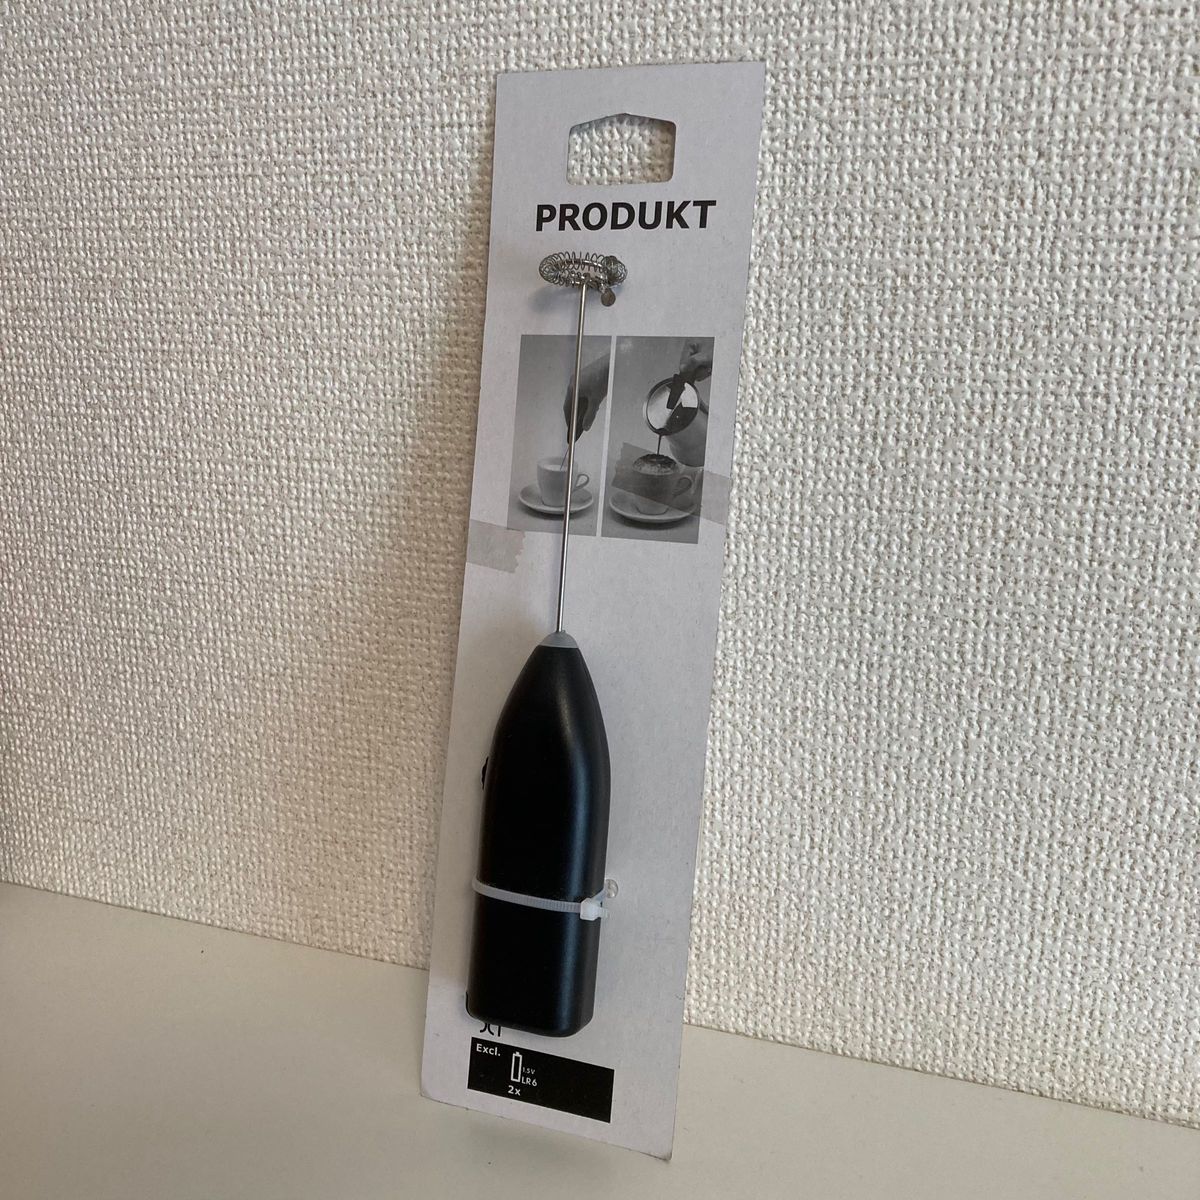 【新品・未使用】IKEA イケア PRODUKT プロドゥクト ミルク泡立て器 ブラック 